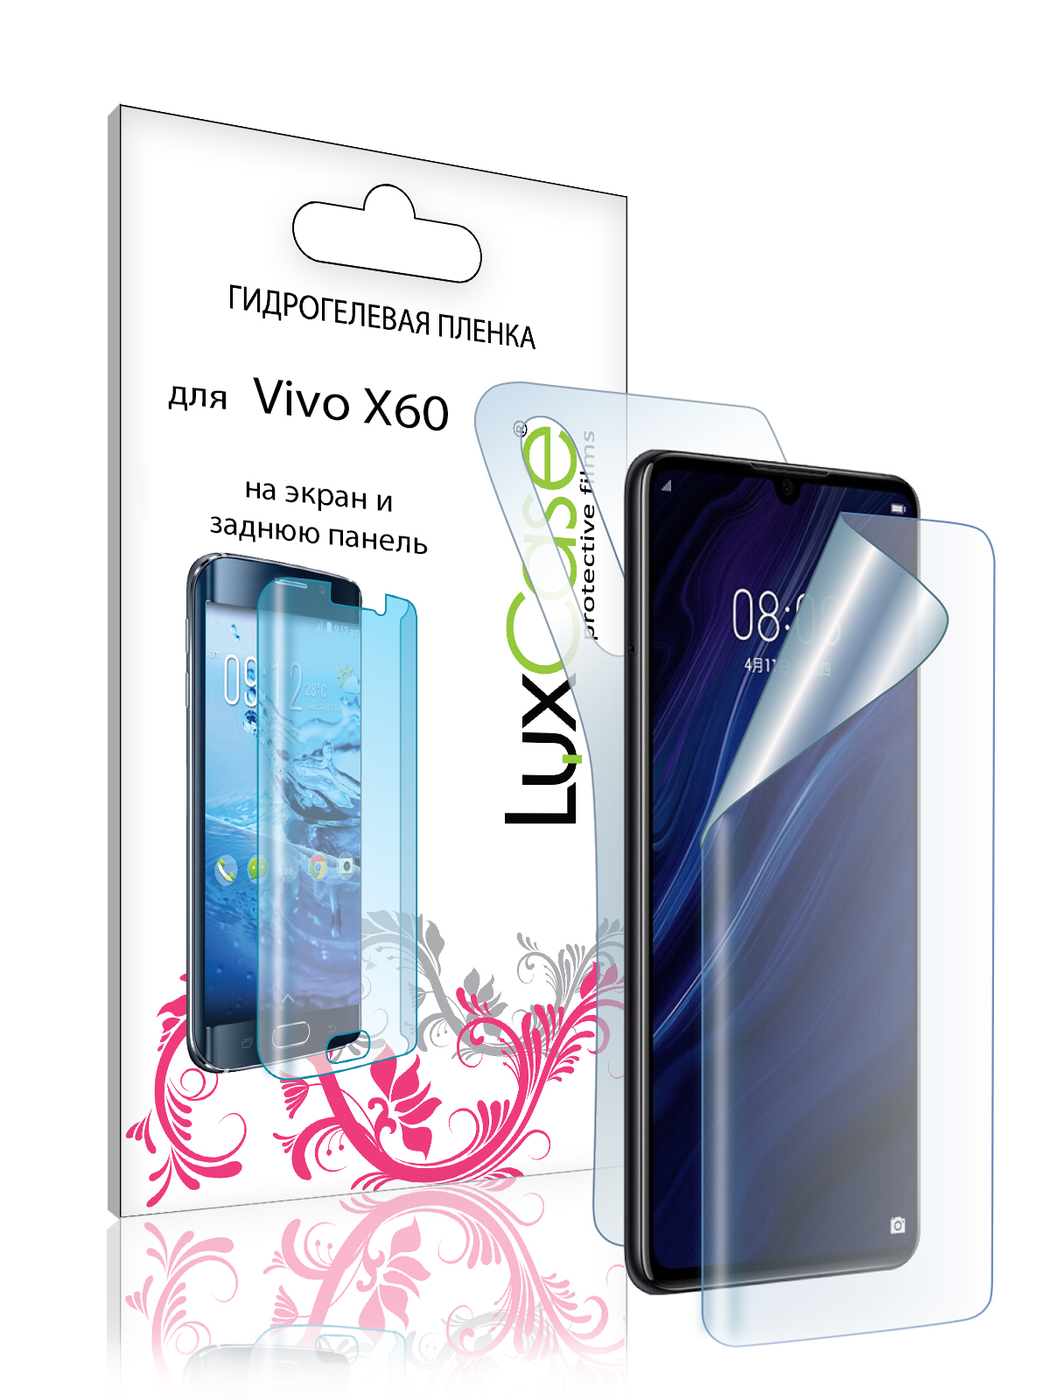 Пленка гидрогелевая LuxCase для Vivo X60 Front and Back 0.14mm Transparent 86006 гидрогелевая пленка с вырезом под камер задняя крышка и на дисплей для vivo x60 pro